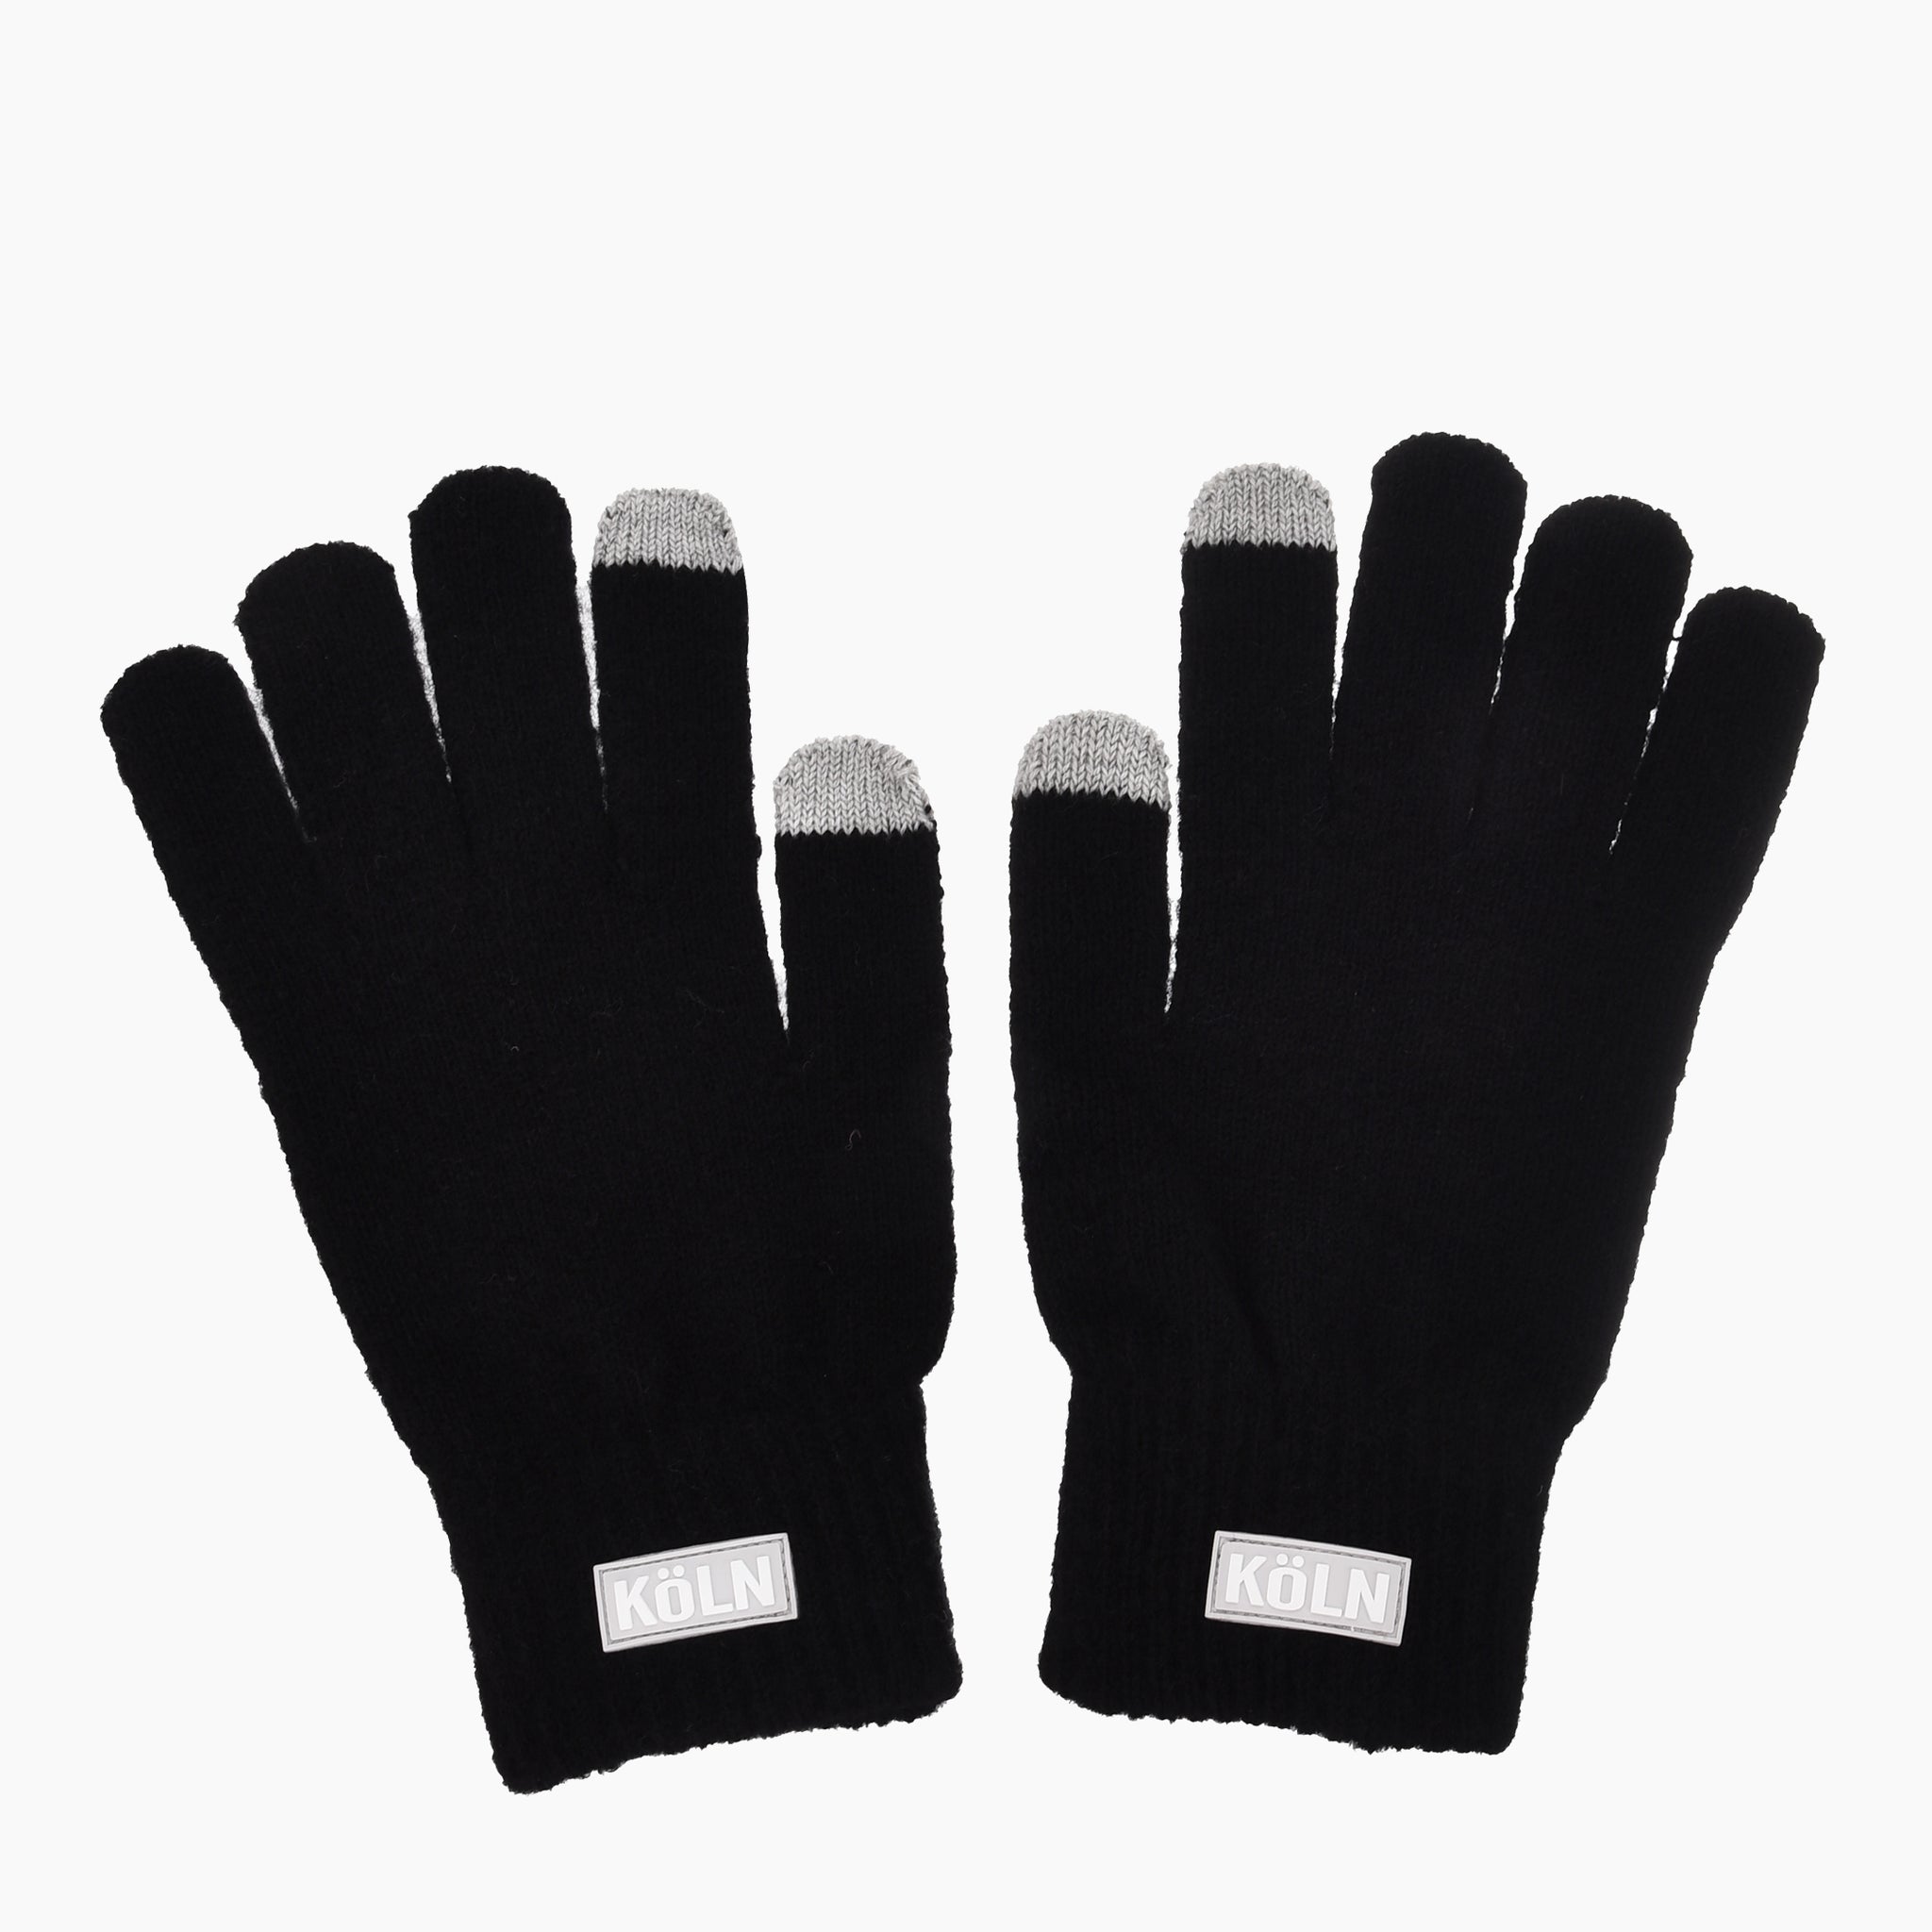 Köln Gloves - Robin Ruth